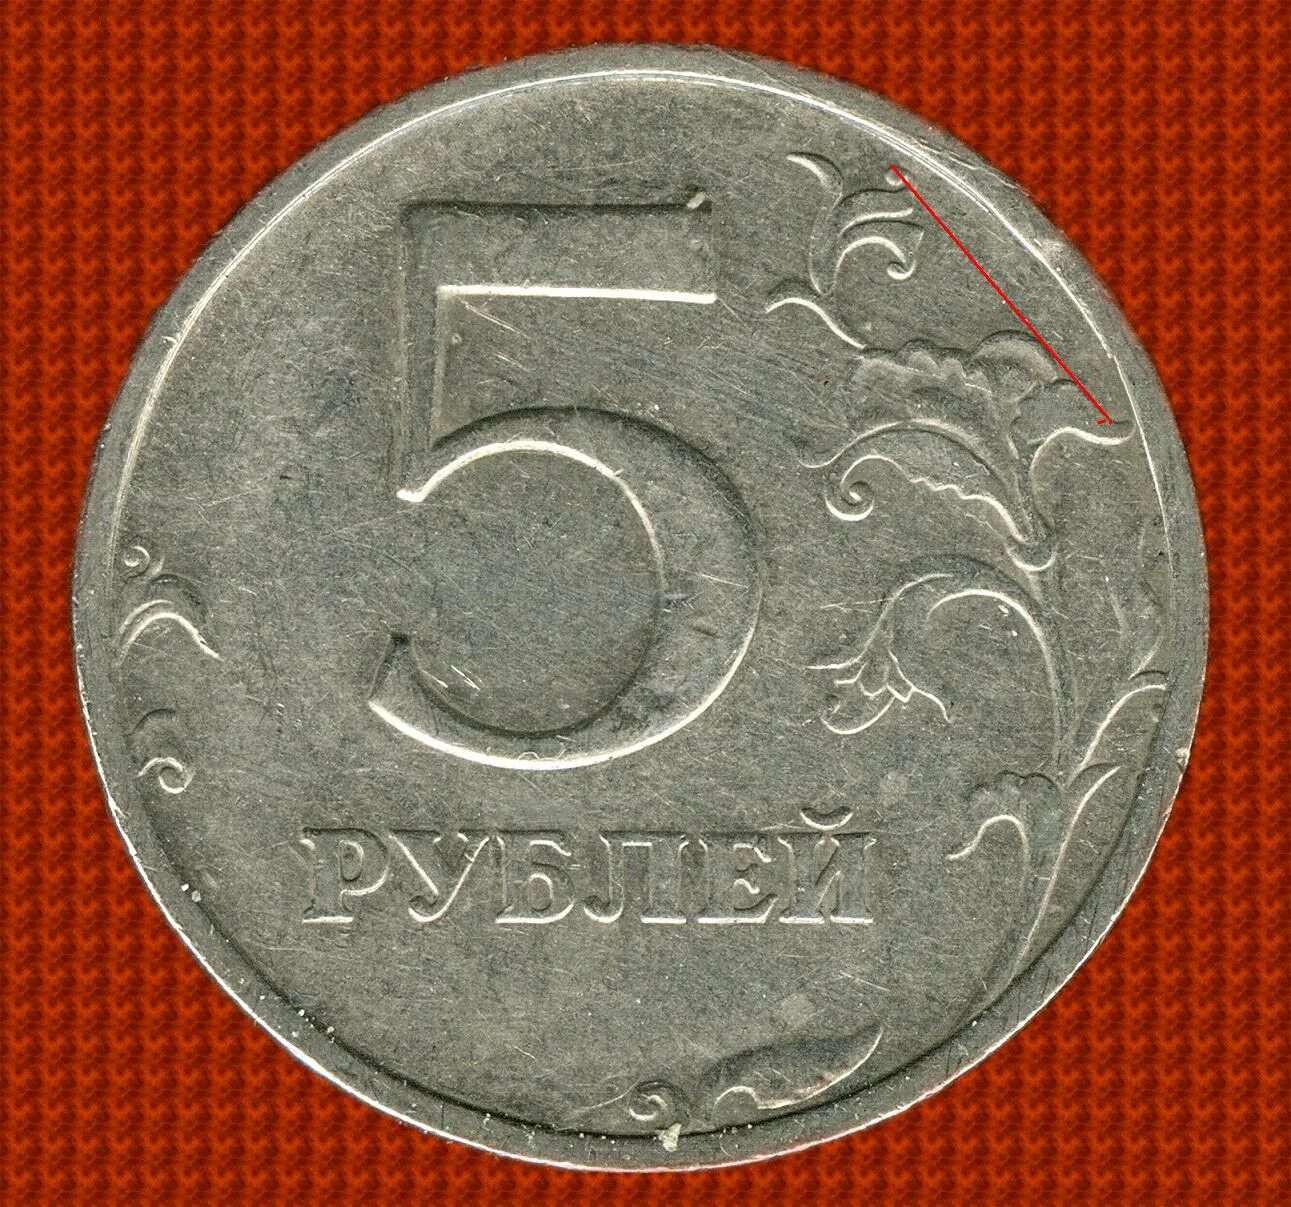 5 рублей повышенной. 5 Рублей 1998 ММД. 5 Рублей 1998 СПМД. 5 Рублей 1998 Московский монетный двор. Пять рублей.